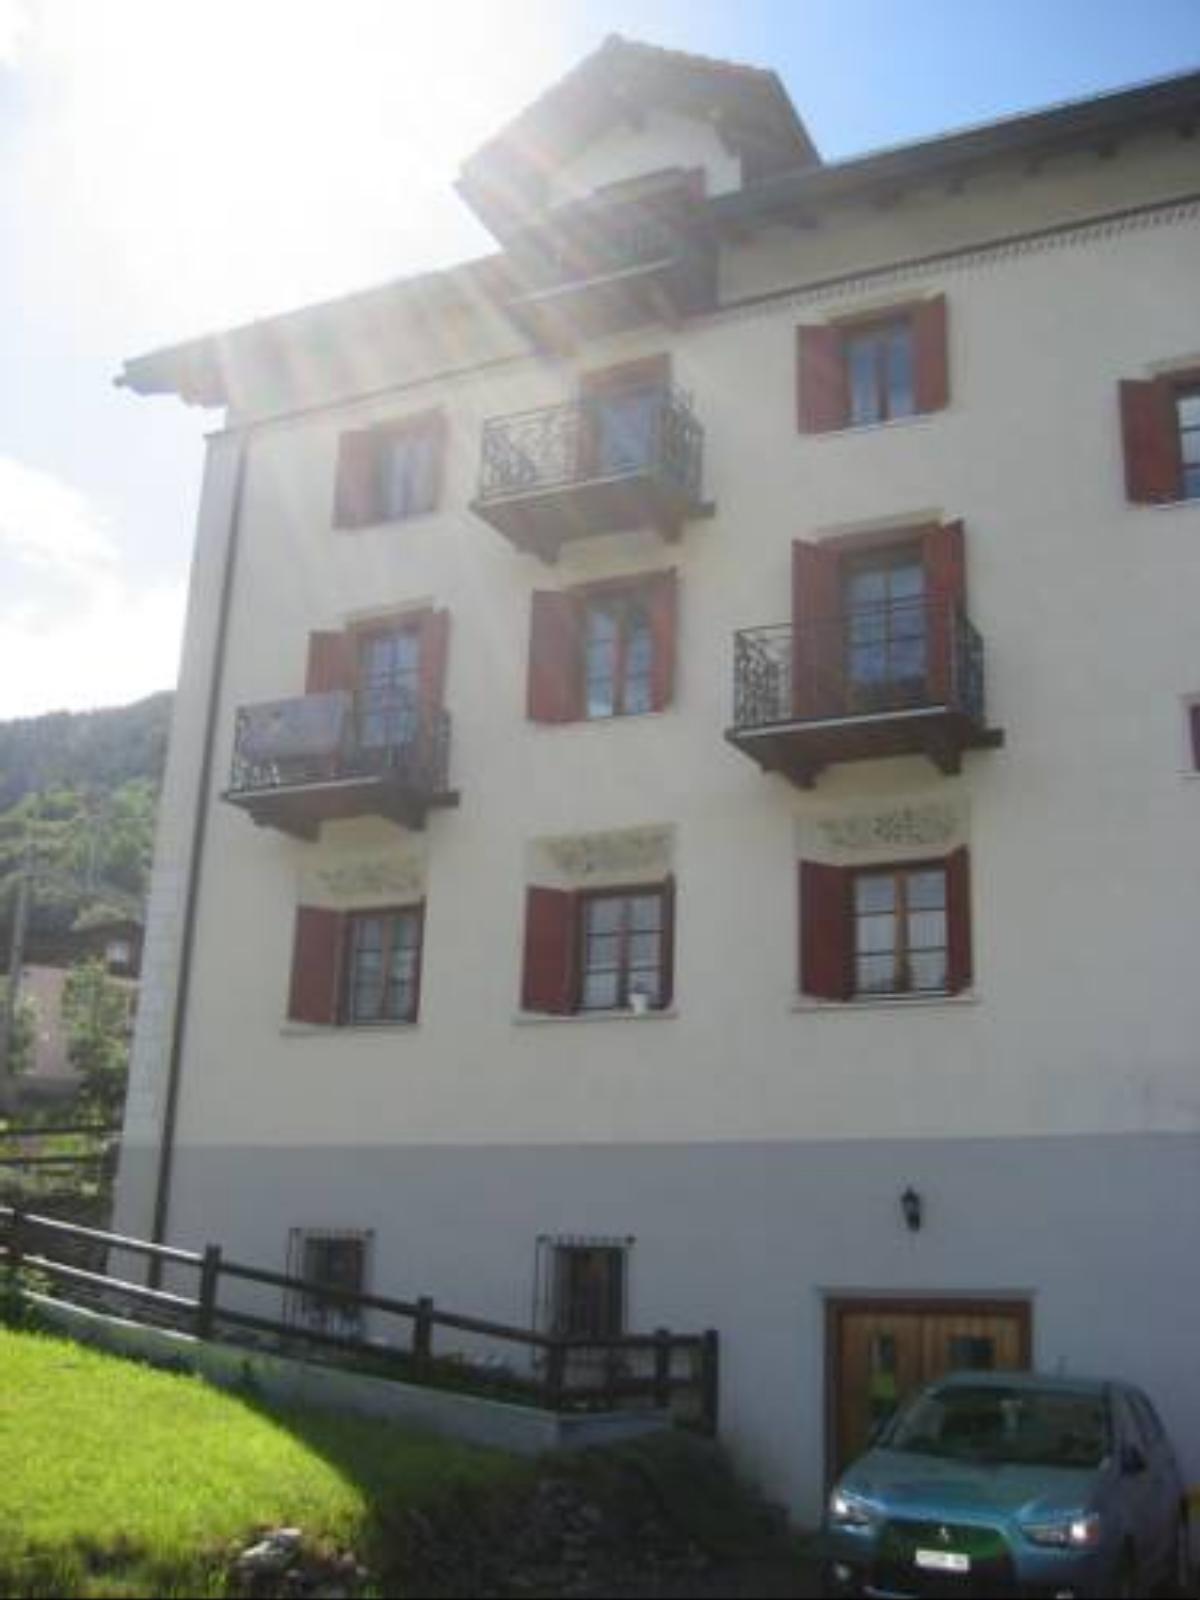 Haus Schellenberg Hotel Klosters Dorf Switzerland